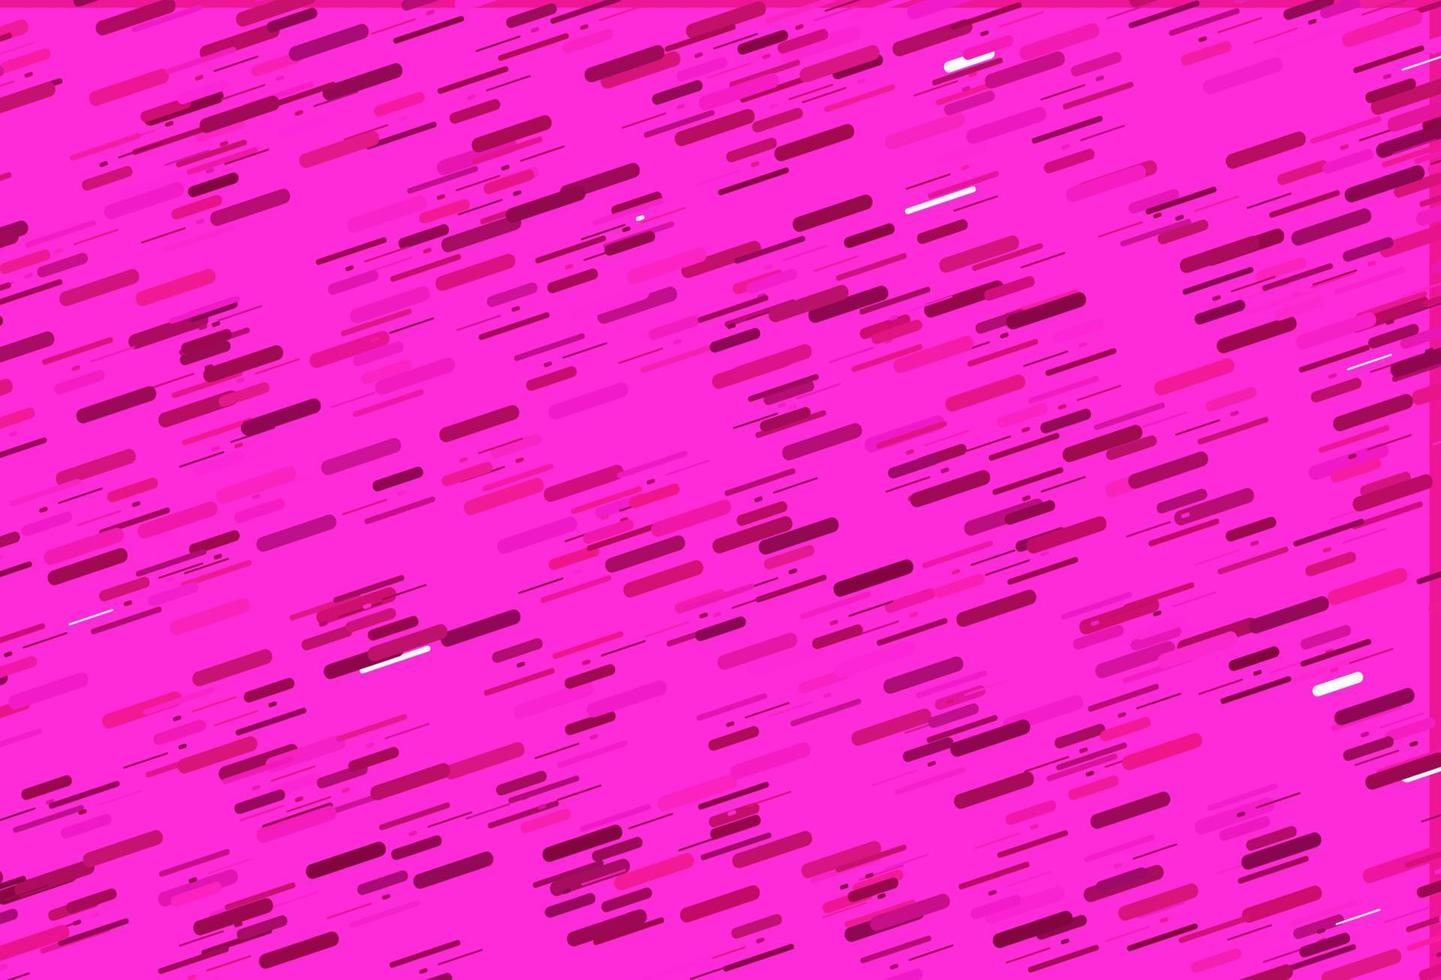 plantilla de vector rosa claro con palos repetidos.